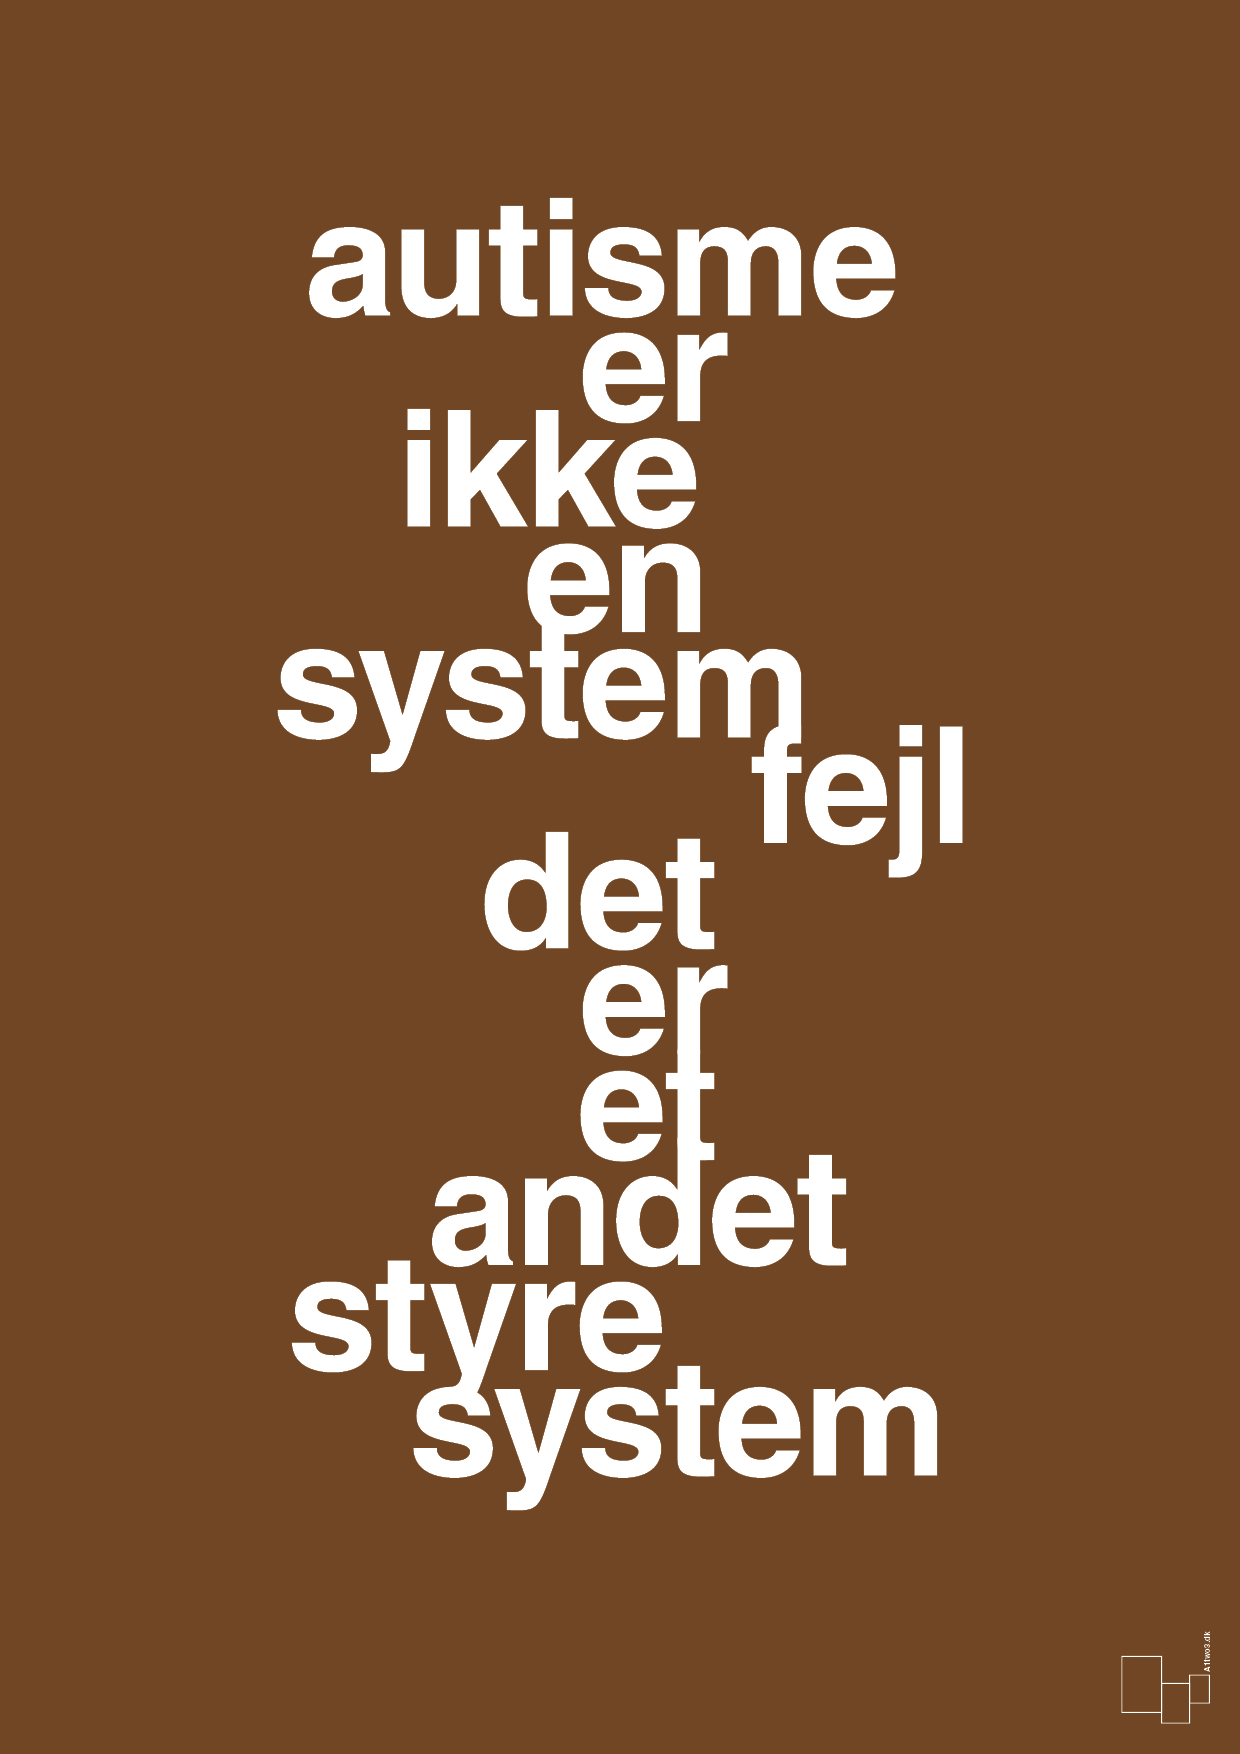 autisme er ikke en systemfejl - Plakat med Samfund i Dark Brown